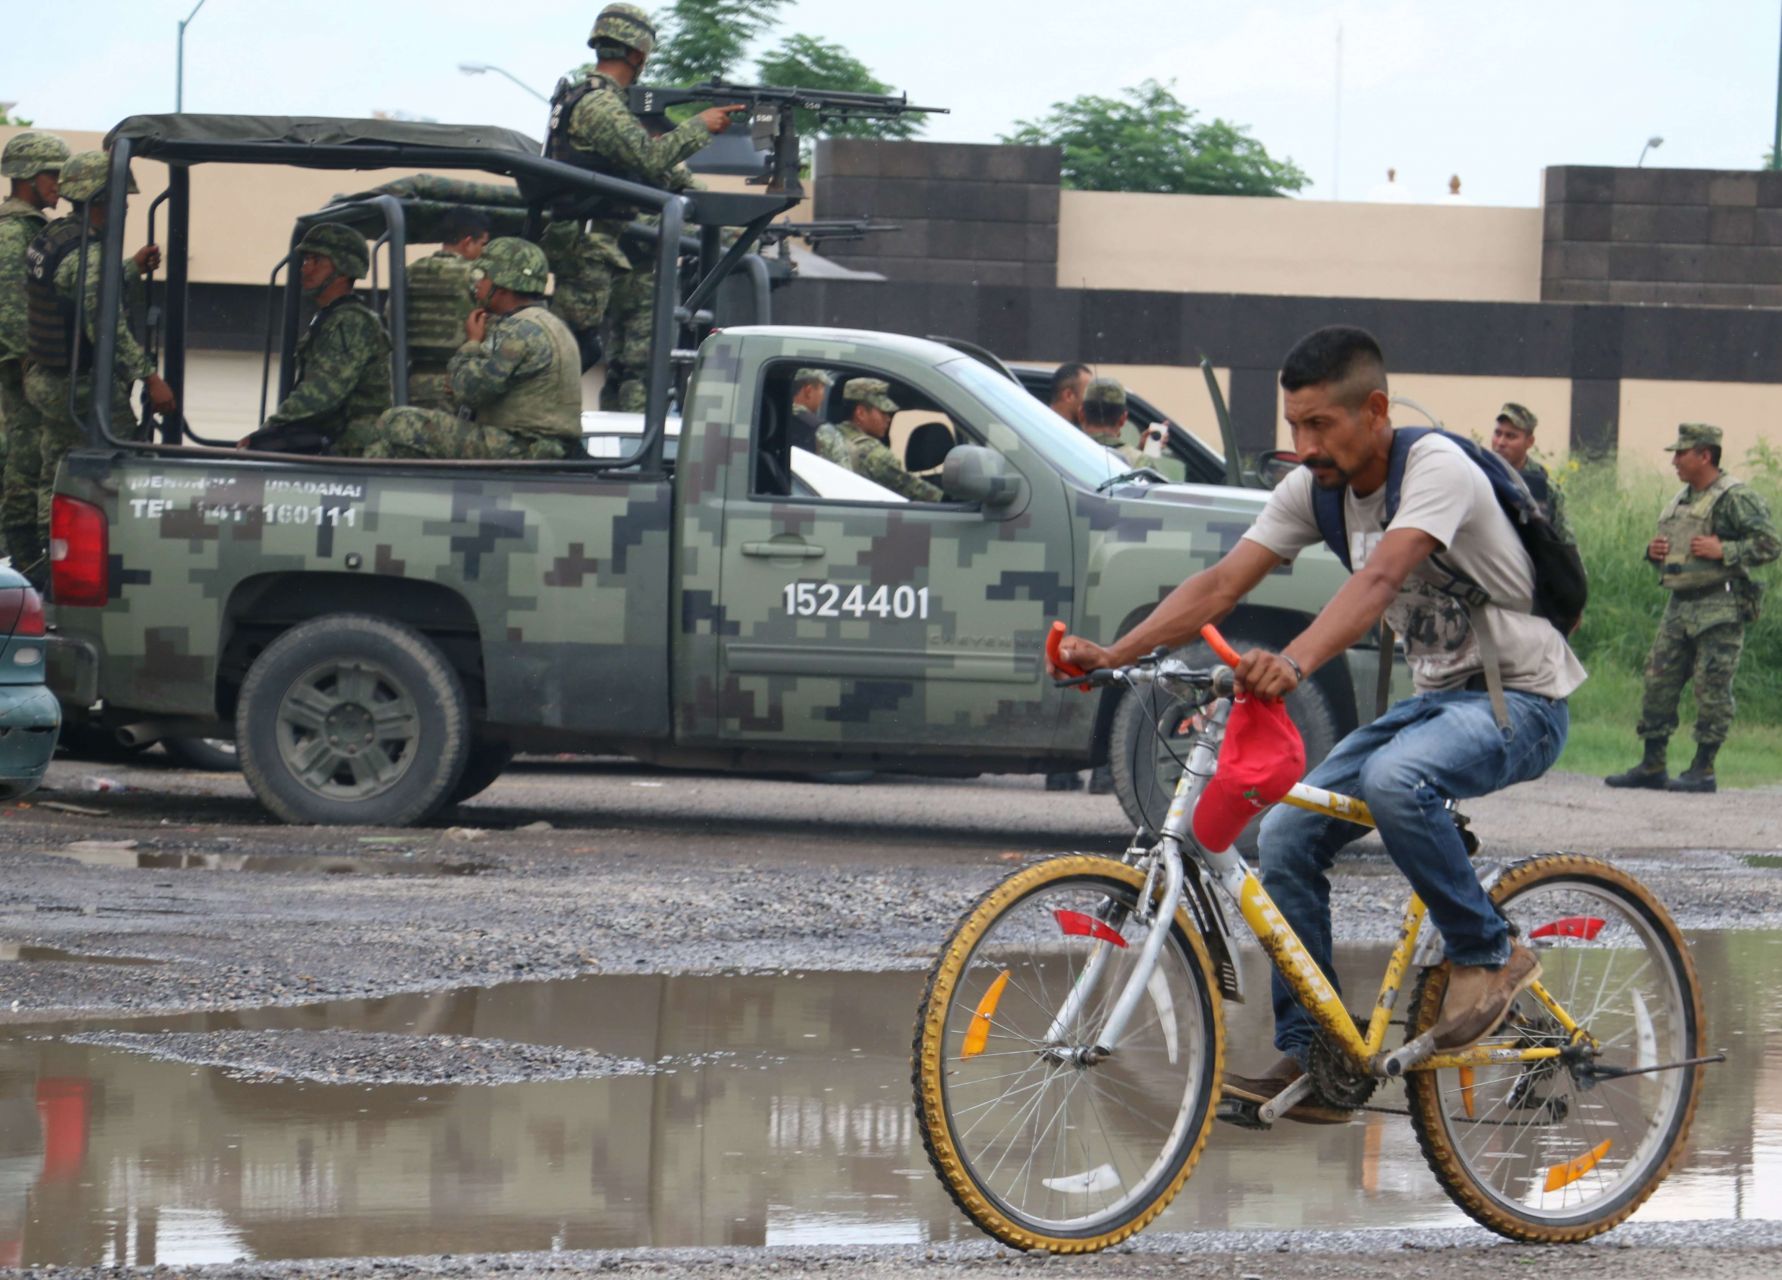 Agentes del Ejército realizan labores de seguridad pública en el país, pero la violencia no termina (Foto: Cuartoscuro)